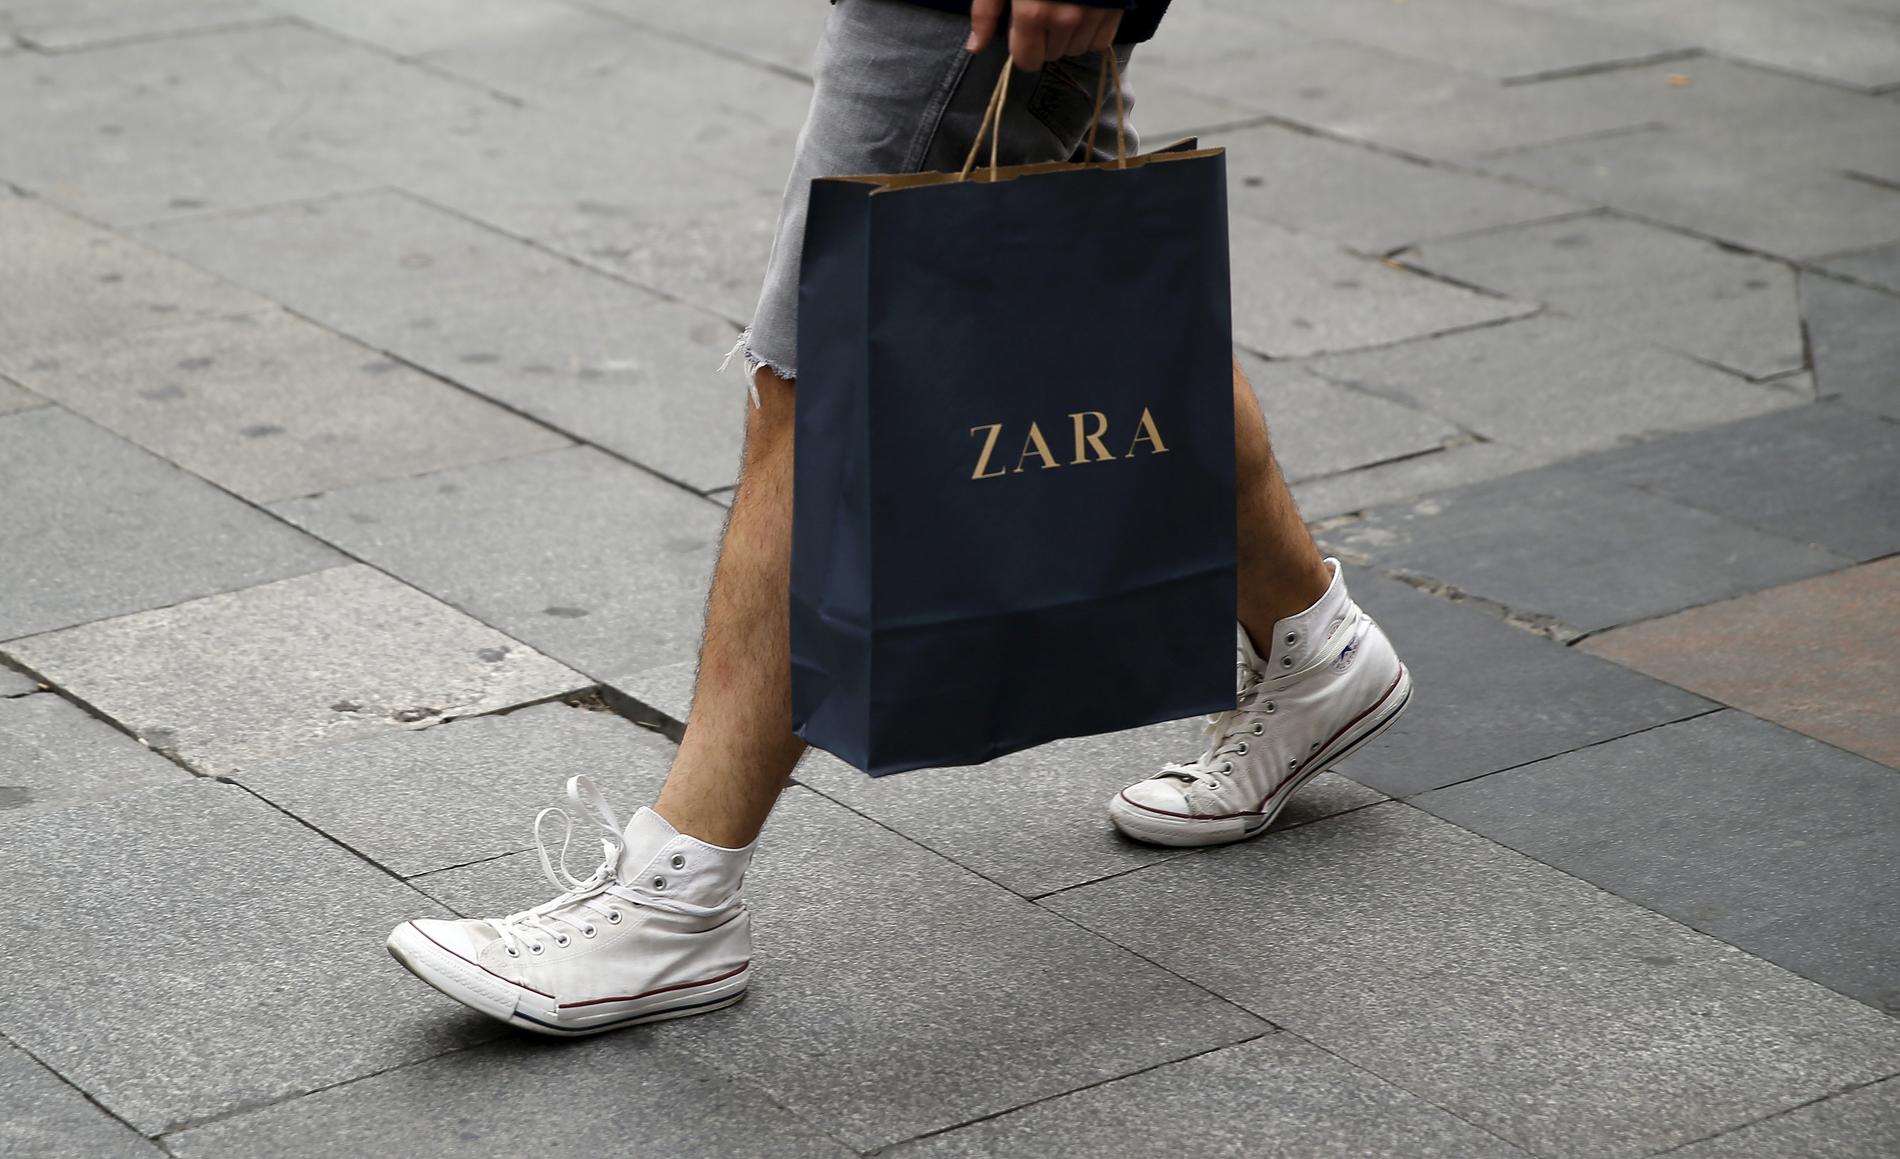 ZARA: Den populære spanske kjeden Zara er blant de som ikke deler fabrikklistene med offentligehten. Foto: NTB Scanpix.